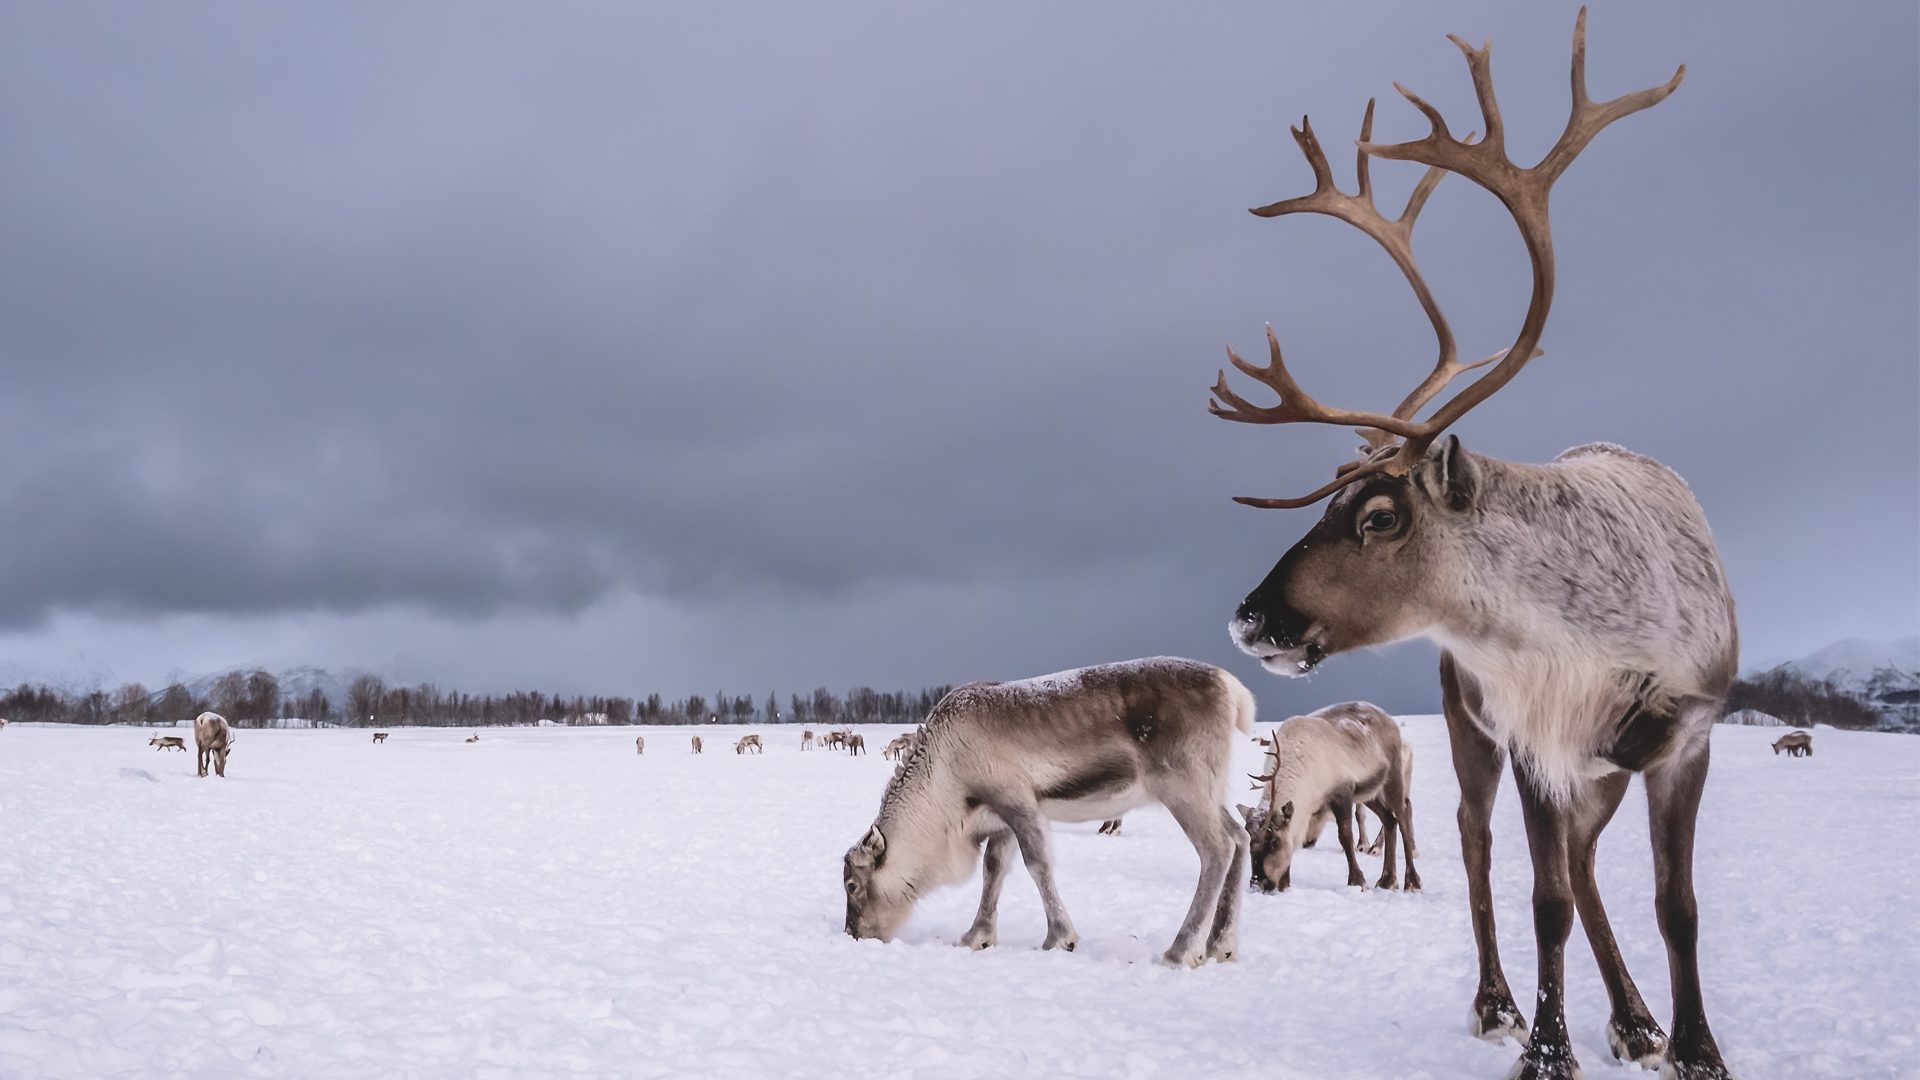 070120-reindeer-1.jpg